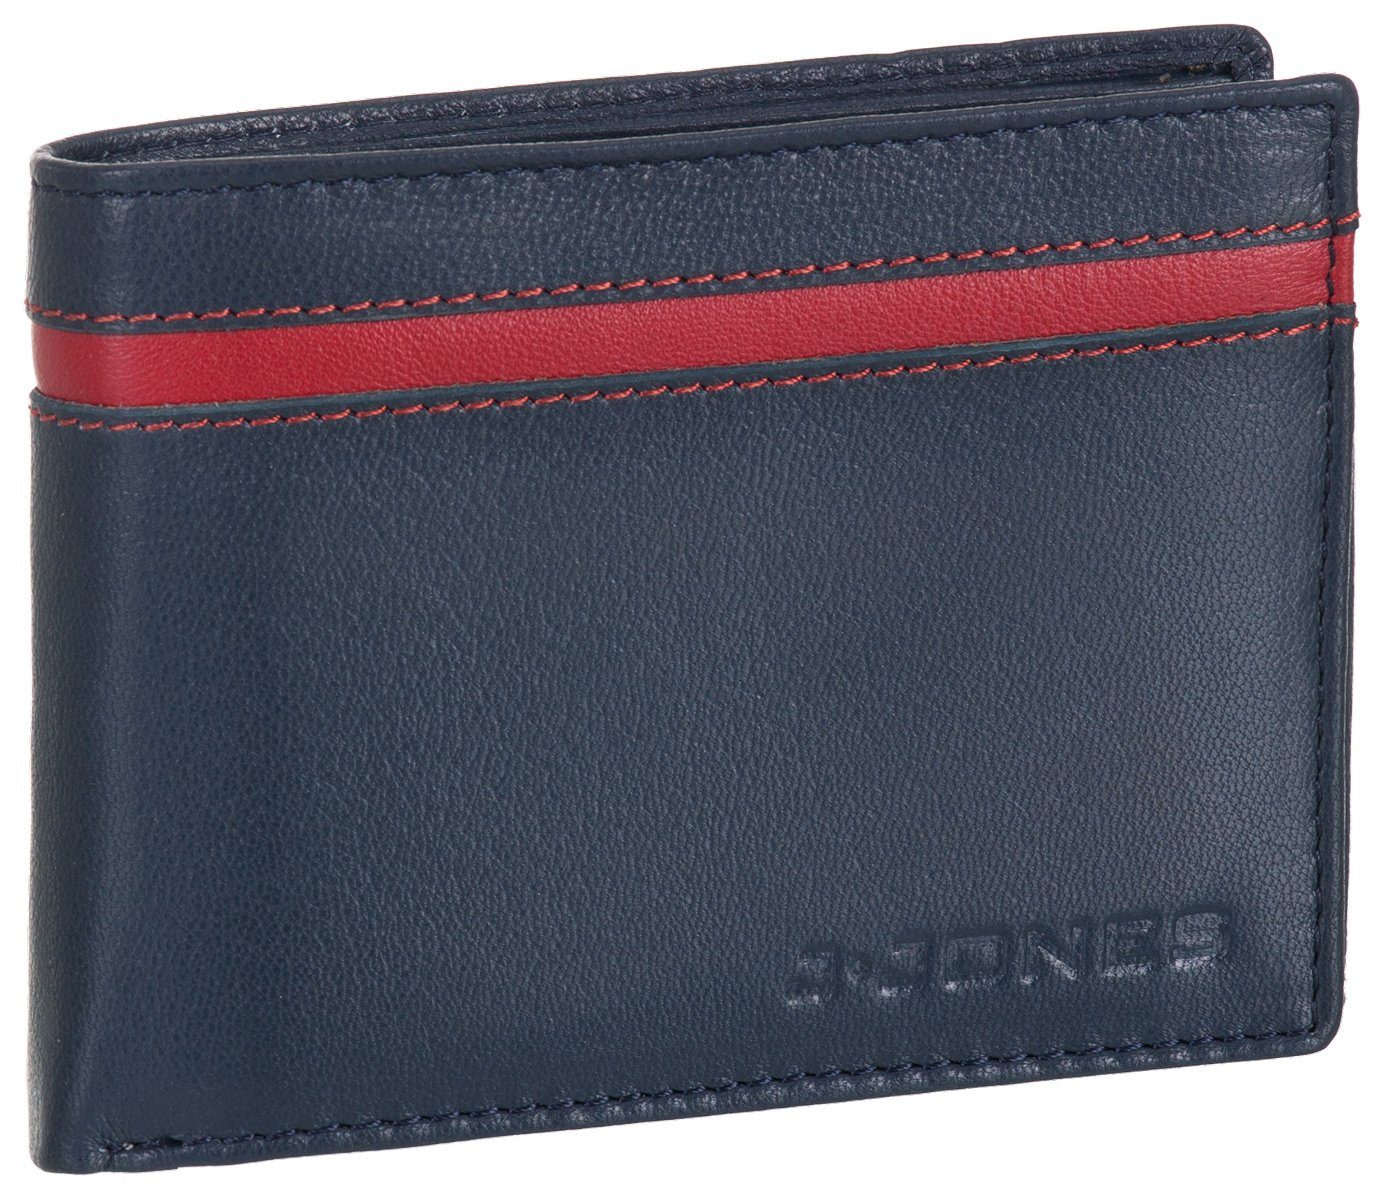 J.Jones Geldbörse, Geldbörse faltbar Echt Leder RFID-Schutz mit Münzfach Portemonnaie Geldbeutel marineblau